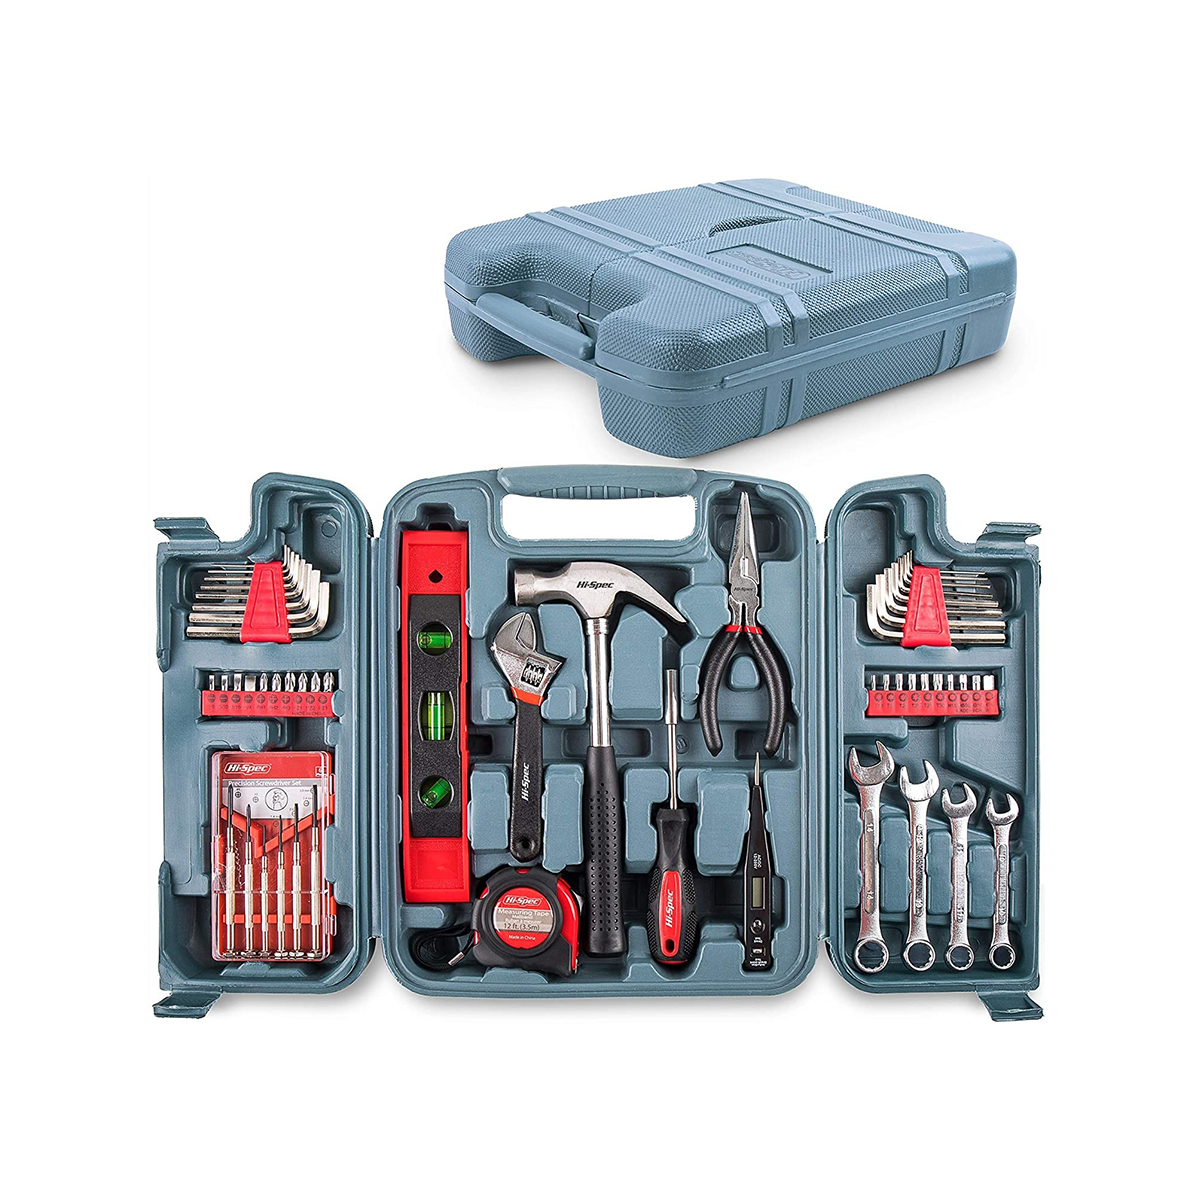 53 pçs kit de combinação de propósitos múltiplos ferramentas manuais kits caseiros para reparos em casa kits de bricolage conjunto de ferramentas completo